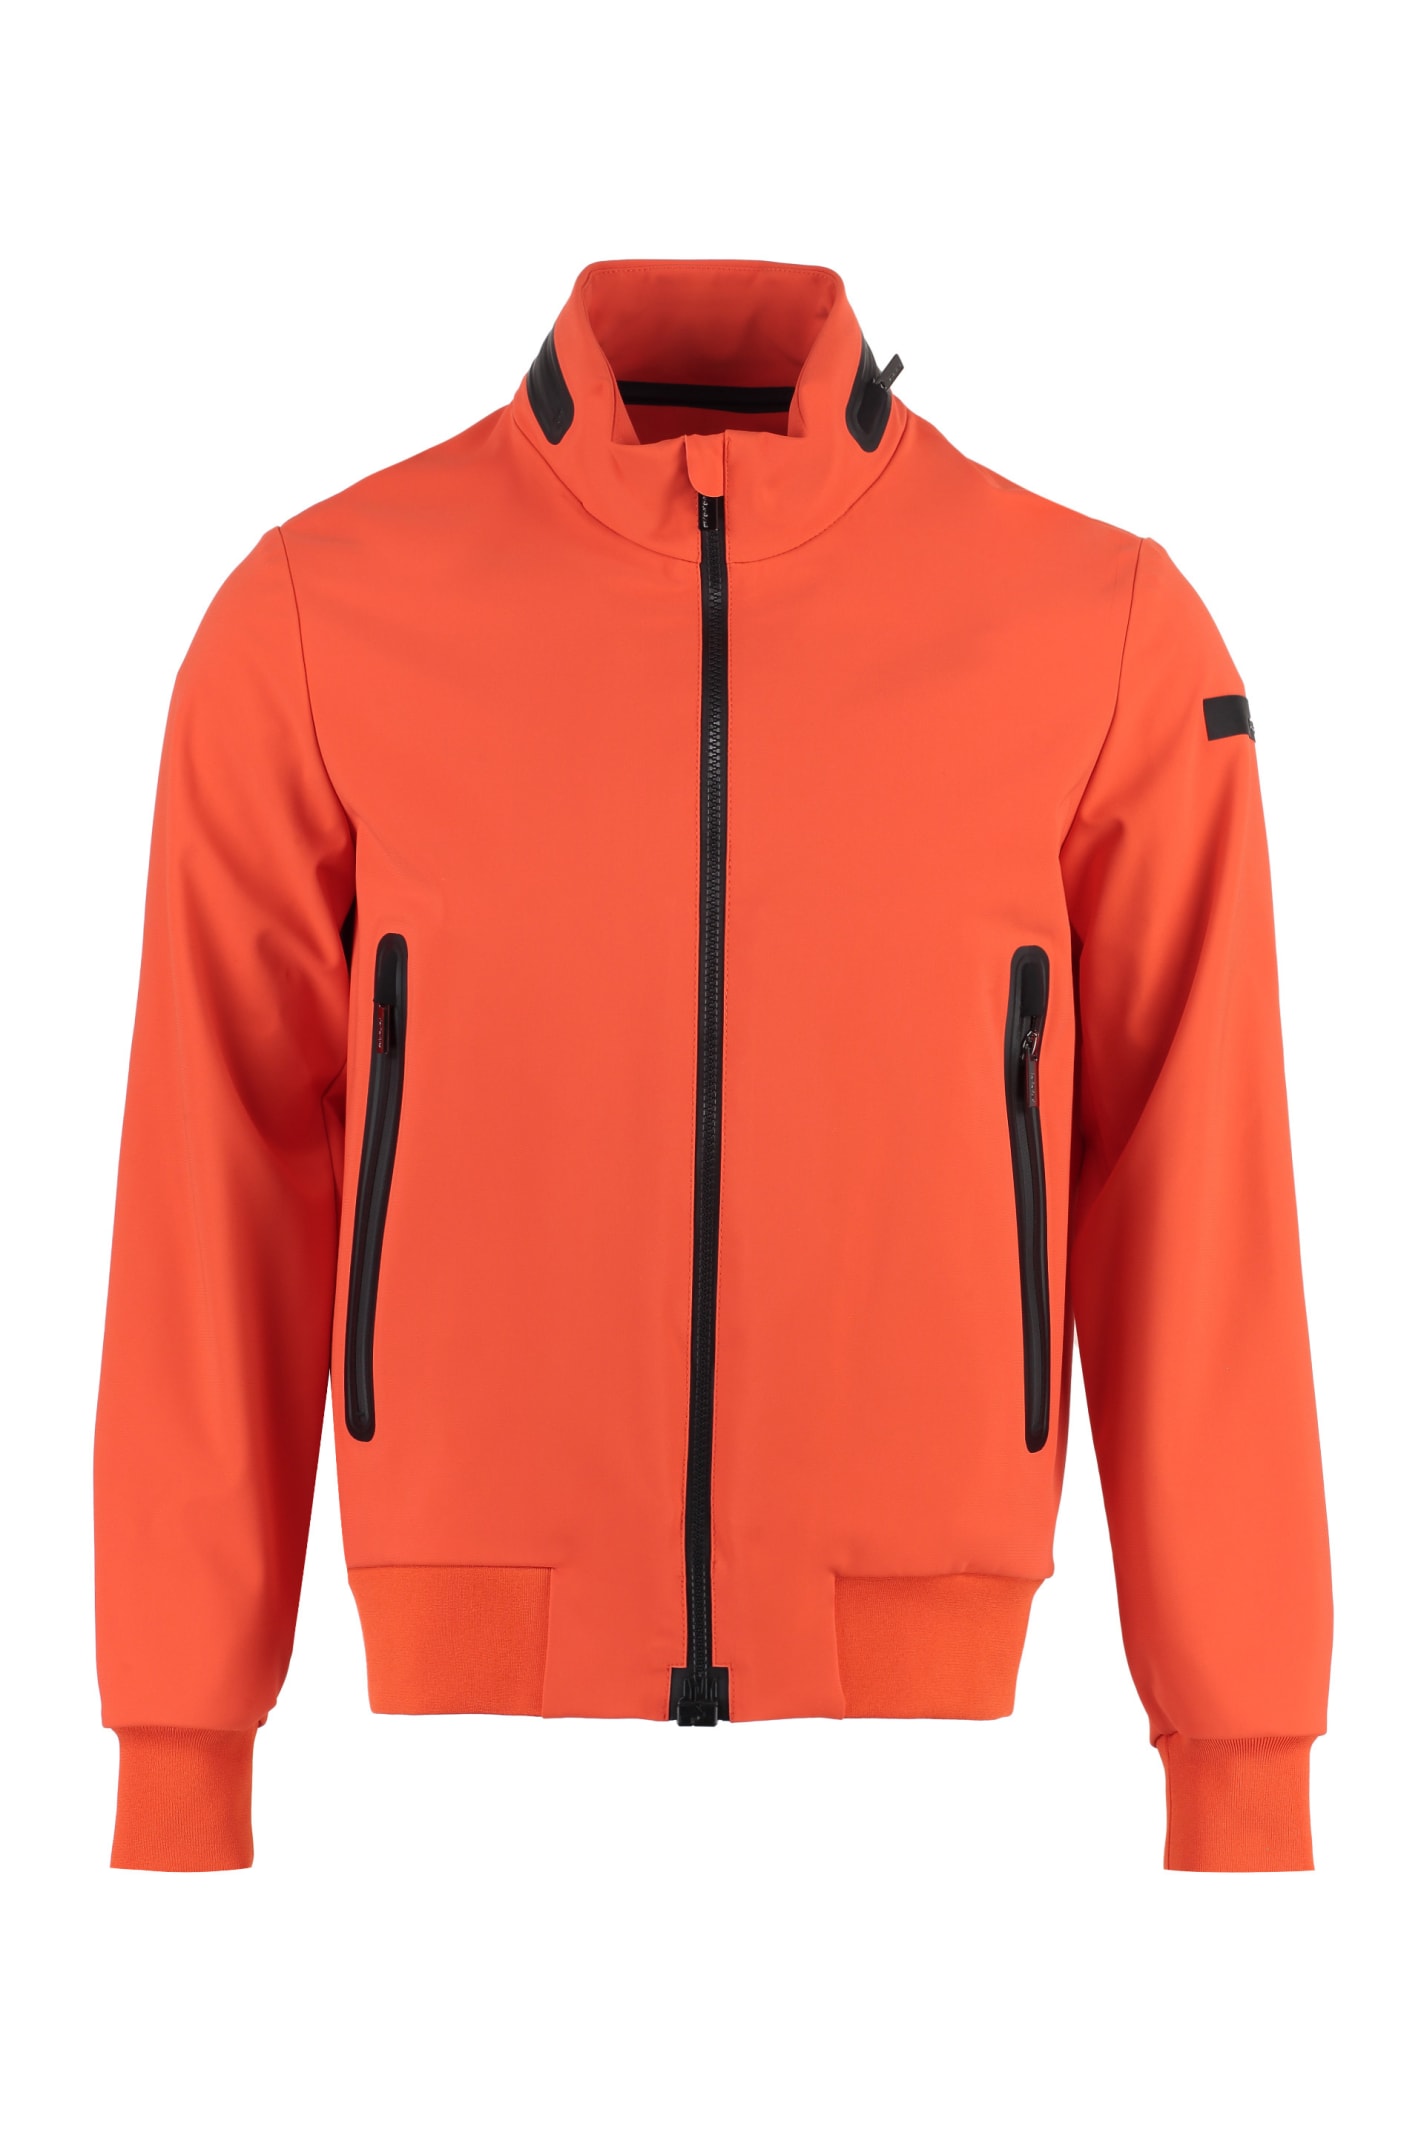 Rrd - Roberto Ricci Design Techno Fabric Jacket In Orange